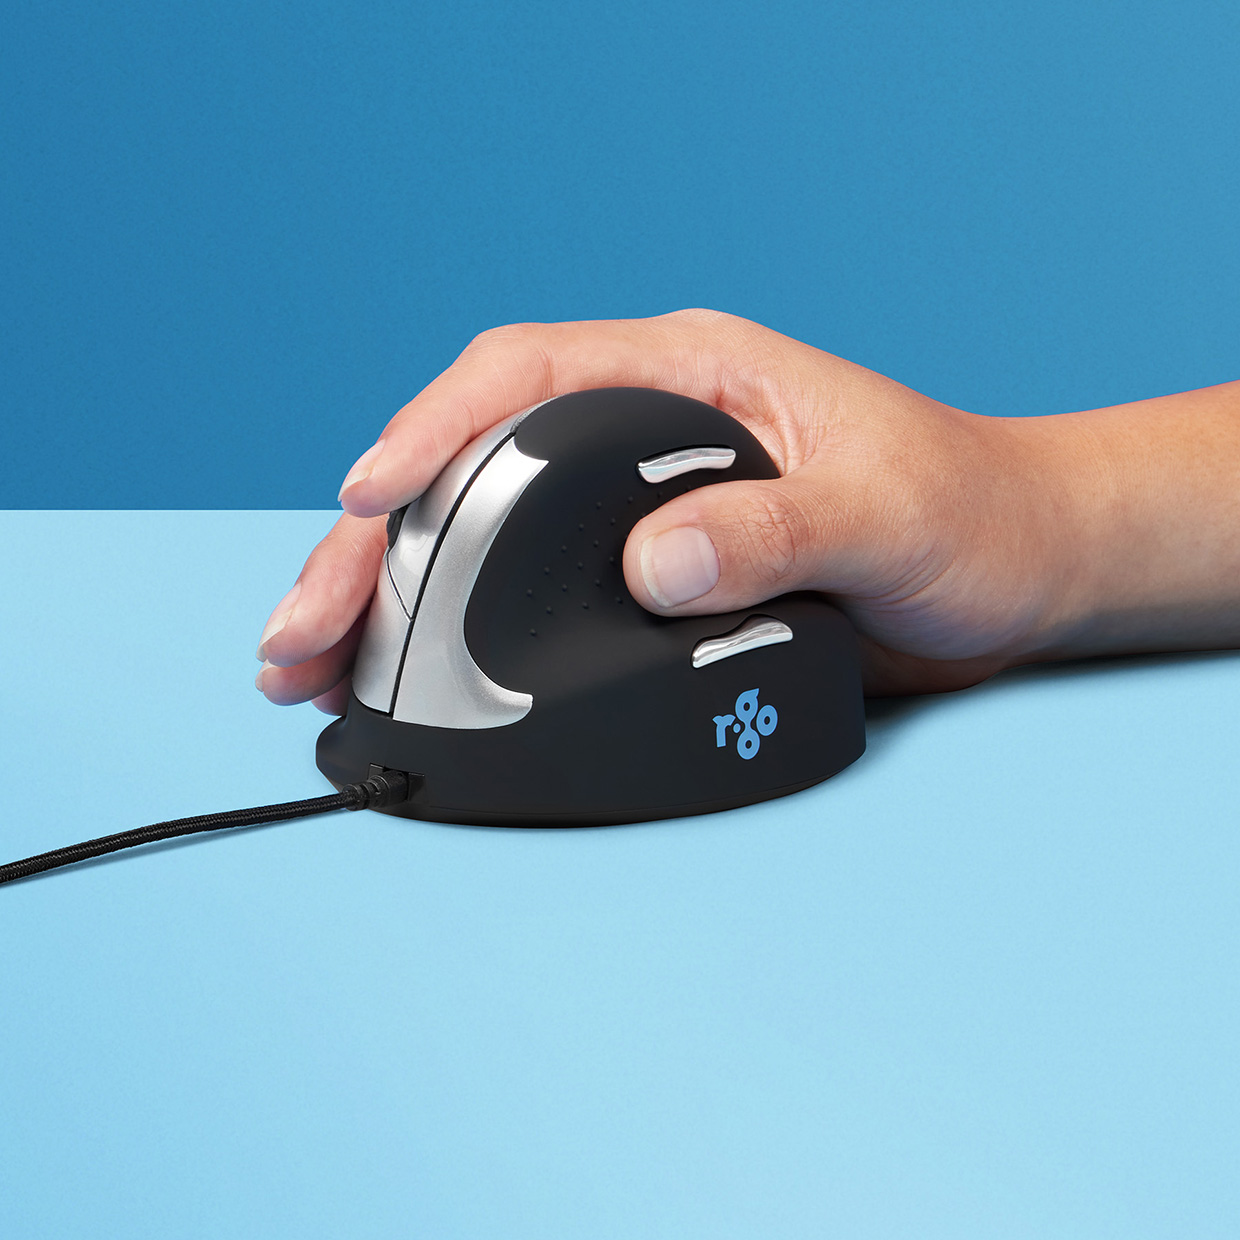 R-Go HE Mouse | Souris verticale sans fil pour gaucher/droitier - Ergo-shop